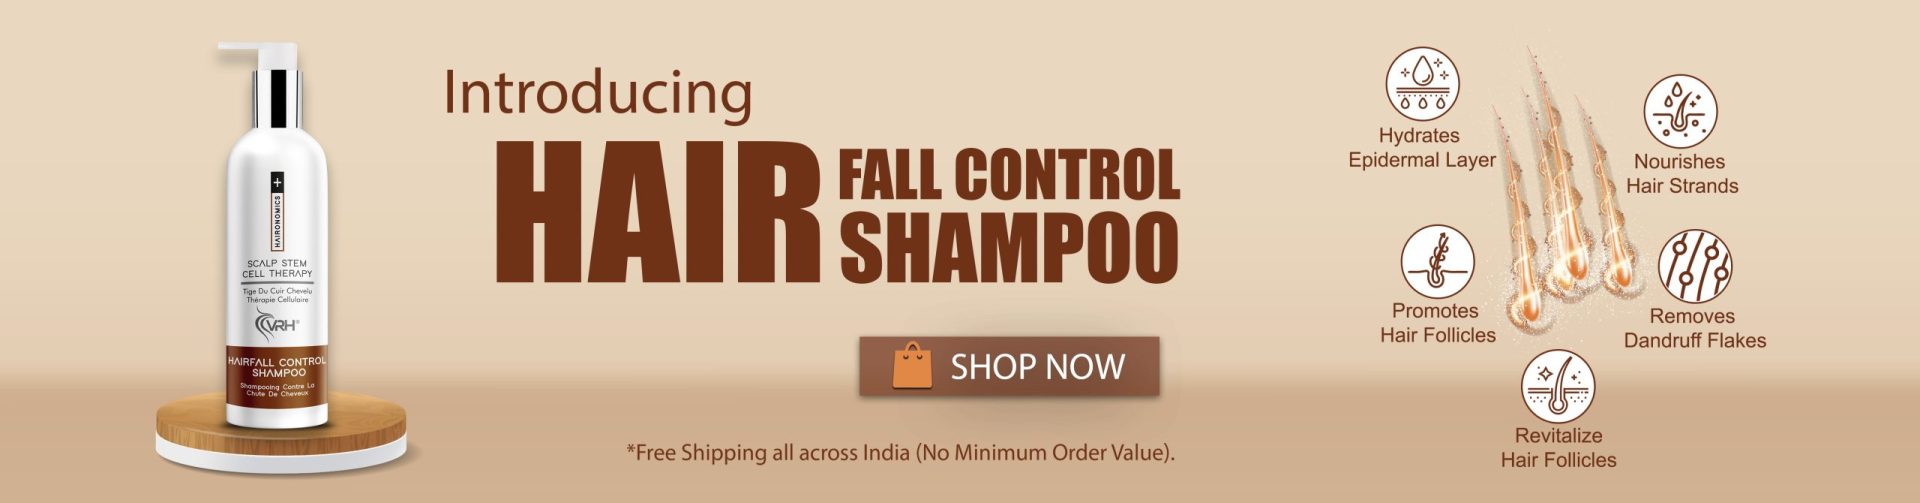 vrh hair fall control shampoo wallpaper 1